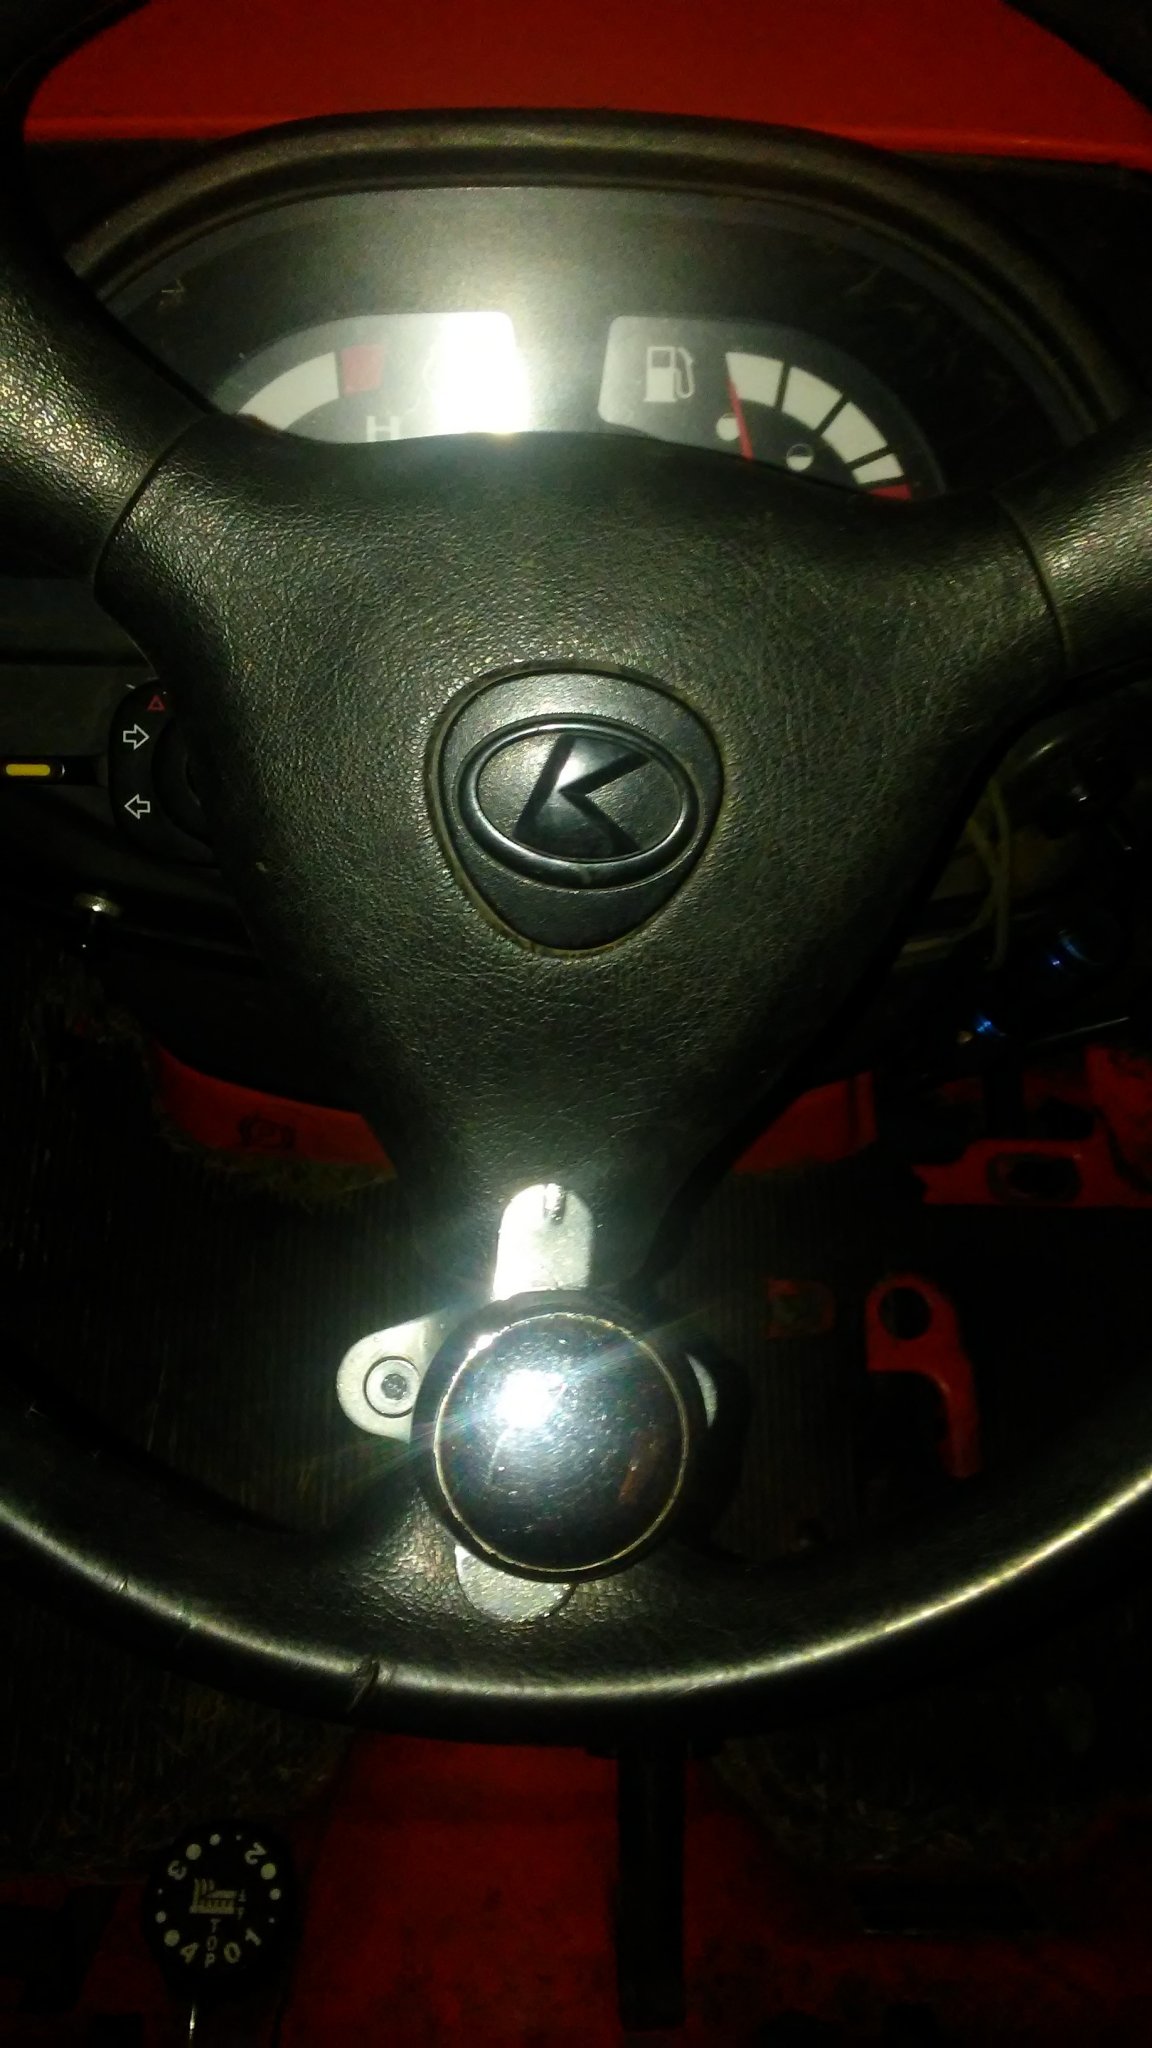 Best no.1 Spinner Steering Knob on Steering Wheel- Car Knob